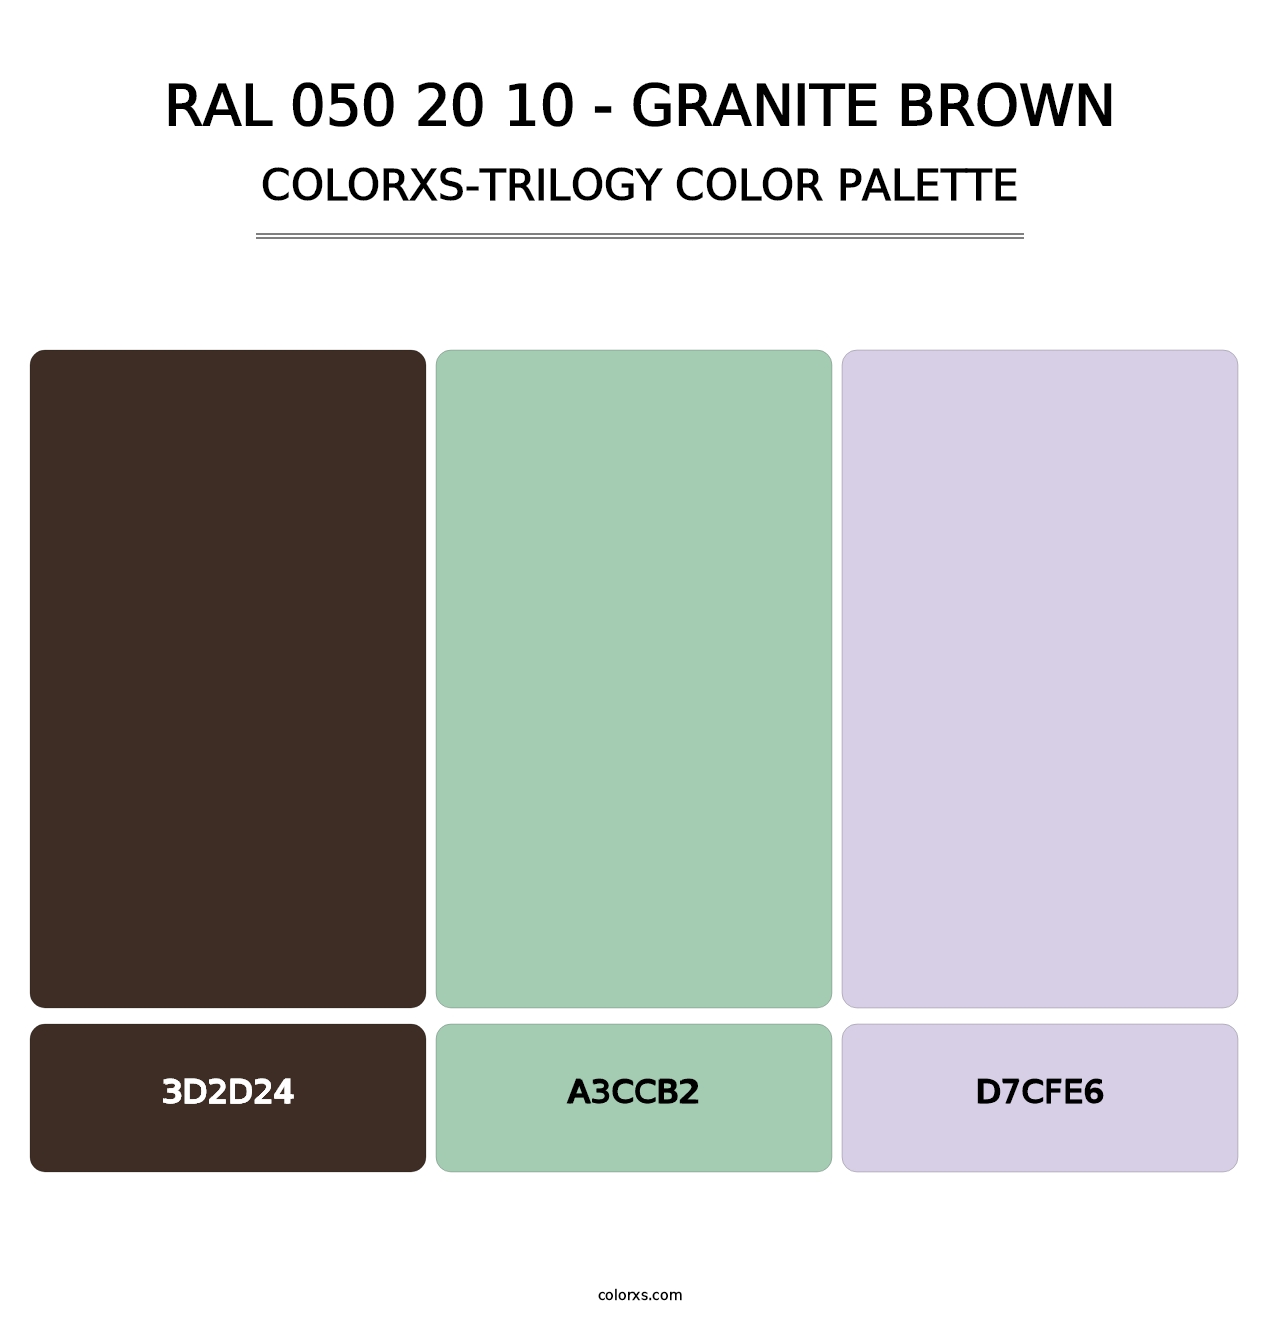 RAL 050 20 10 - Granite Brown - Colorxs Trilogy Palette